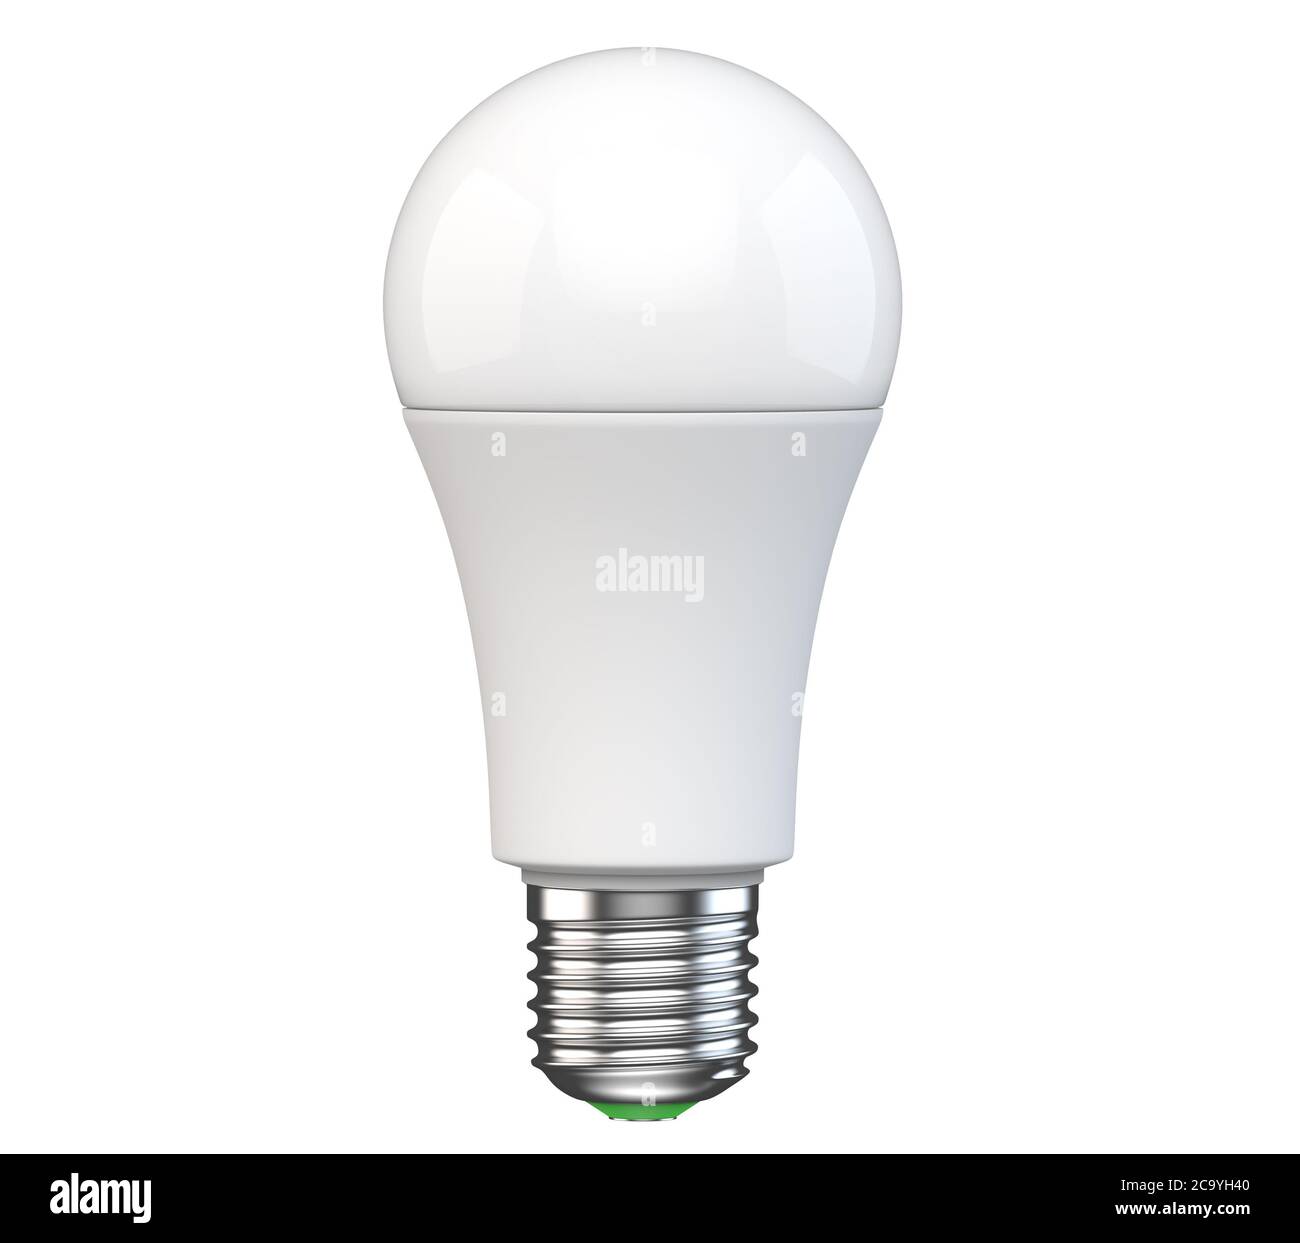 Nouvelle technologie ampoule LED isolée sur fond blanc. Rendu 3D réaliste de la lampe à diodes électroluminescentes électriques à économie d'énergie. Mockupas Banque D'Images